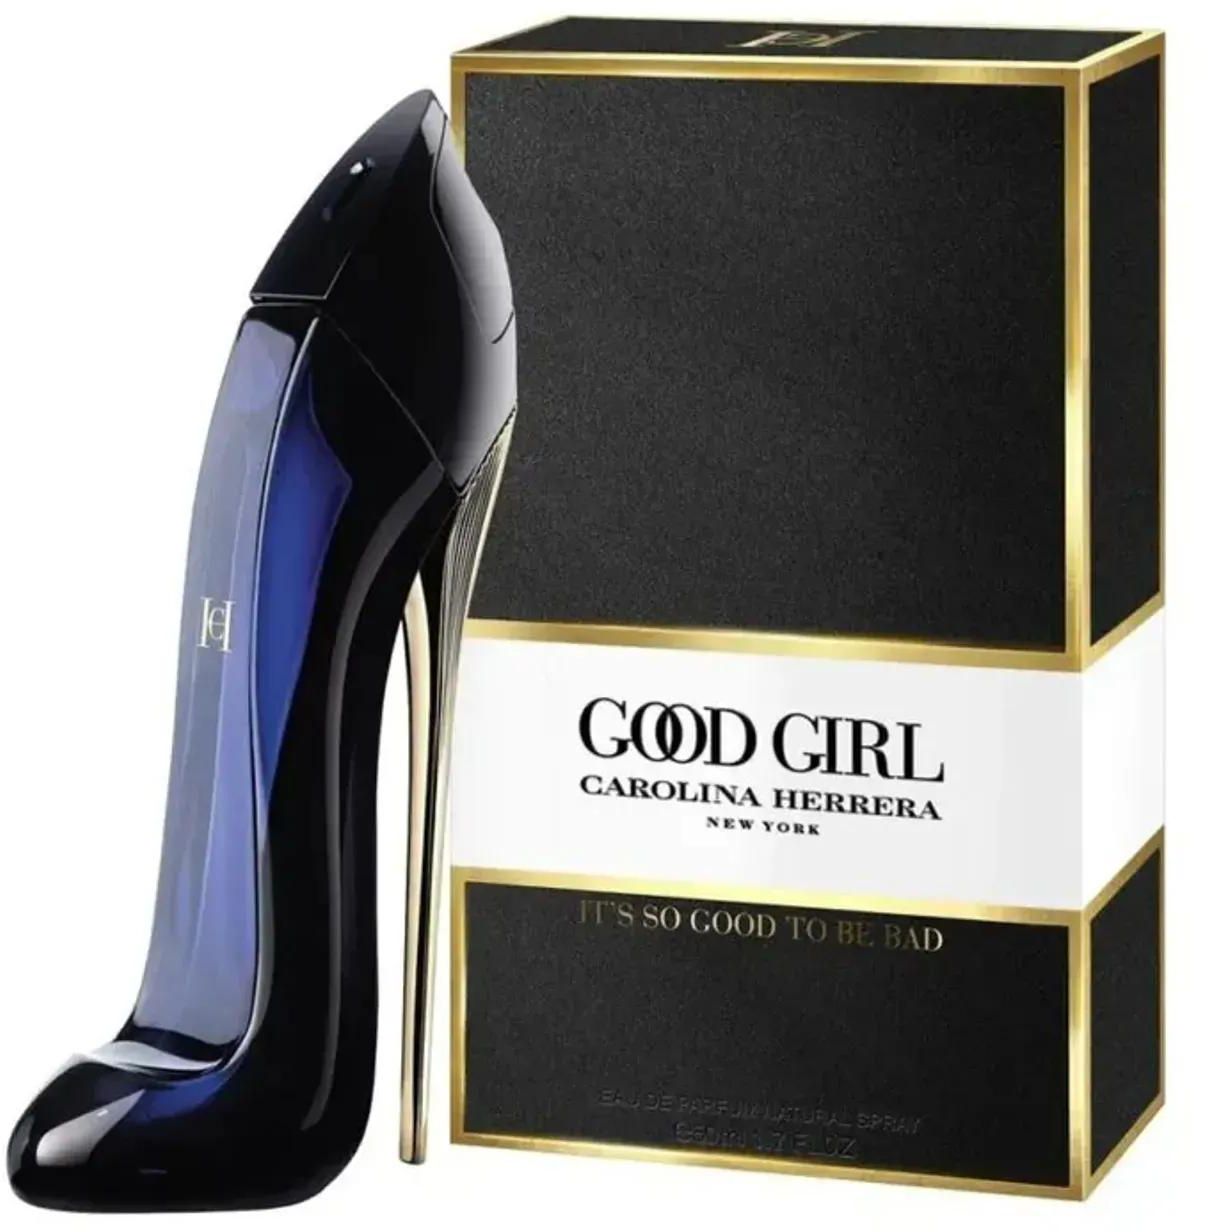 Good Girl Perfume by Carolina Herrera For Women 80ml 80